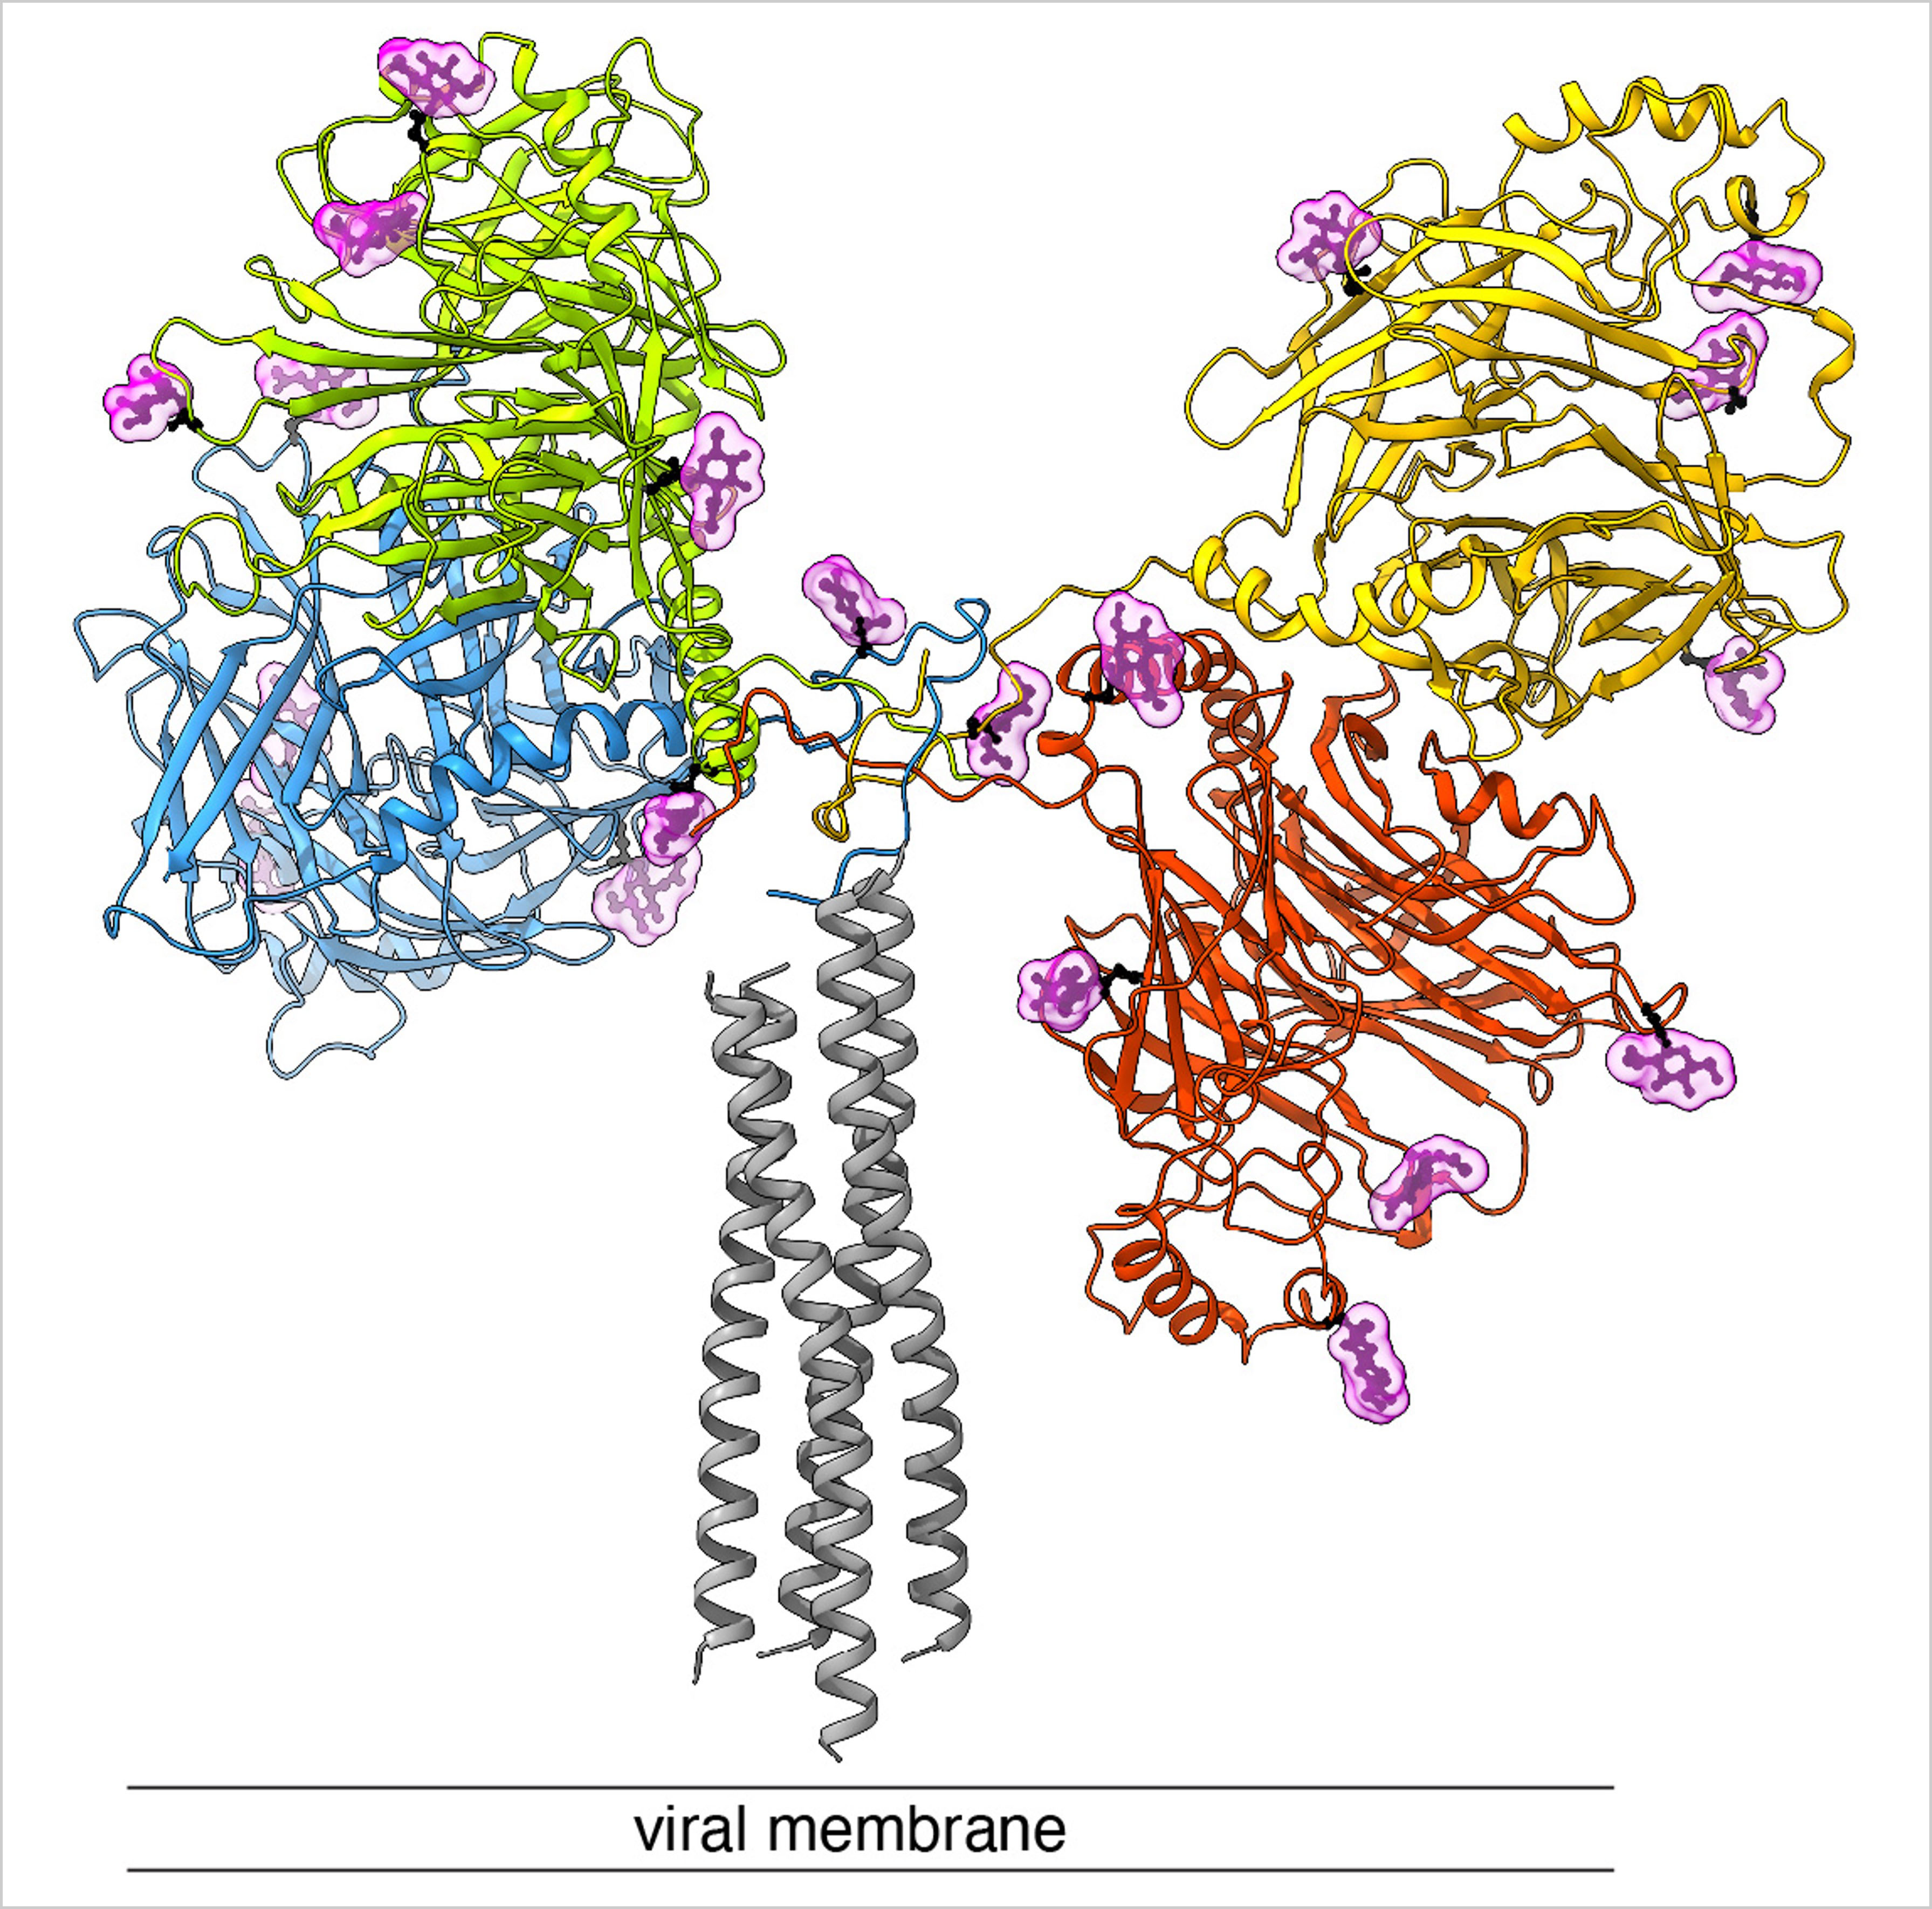 Seitenansicht des «Andock-Proteins» des Hundestaupevirus. Rot, blau, gelb und grün gefärbt sind die vier grossen Köpfe und die verbindende Halsdomäne des viralen Proteins. Der Stiel ist grau eingefärbt. Das H-Protein ist in der viralen Membran verankert. In Hellrosa sind Zuckermoleküle dargestellt, die dem Virus helfen, sich vor dem Immunsystem zu tarnen. © IBMM / Universität Bern